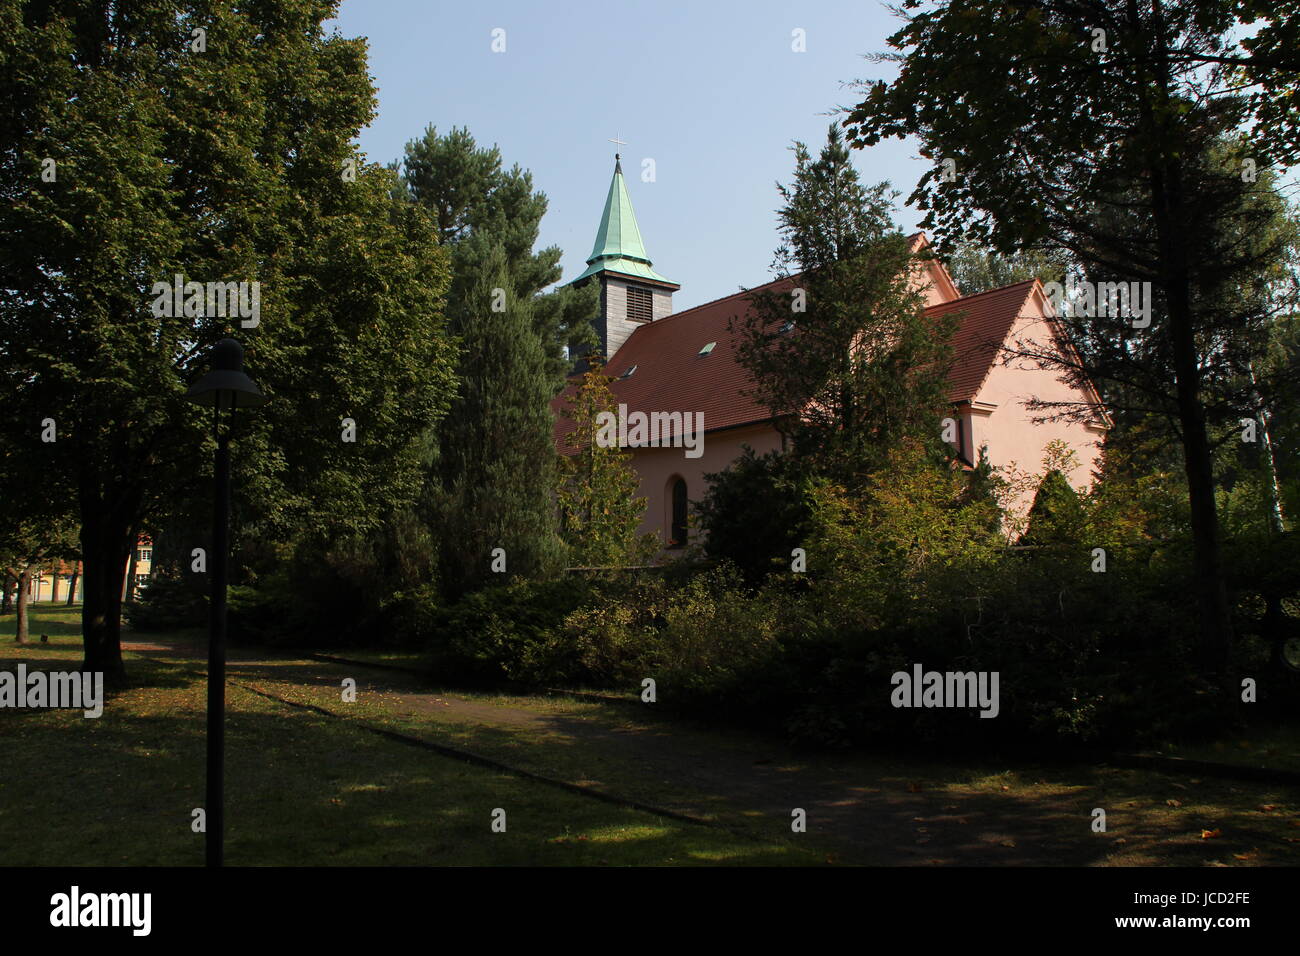 Eine kleine Kirche in Sachsen - Anhalt Stockfoto